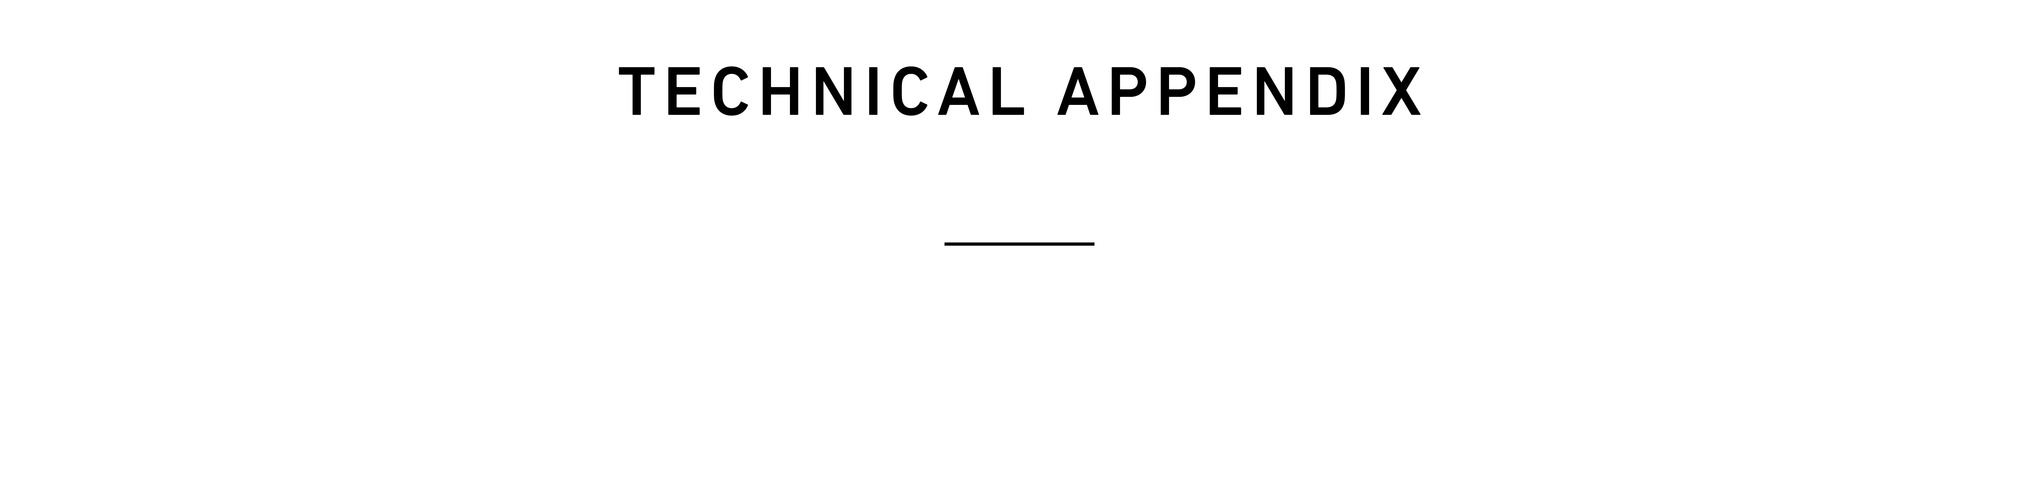 Technical Appendix